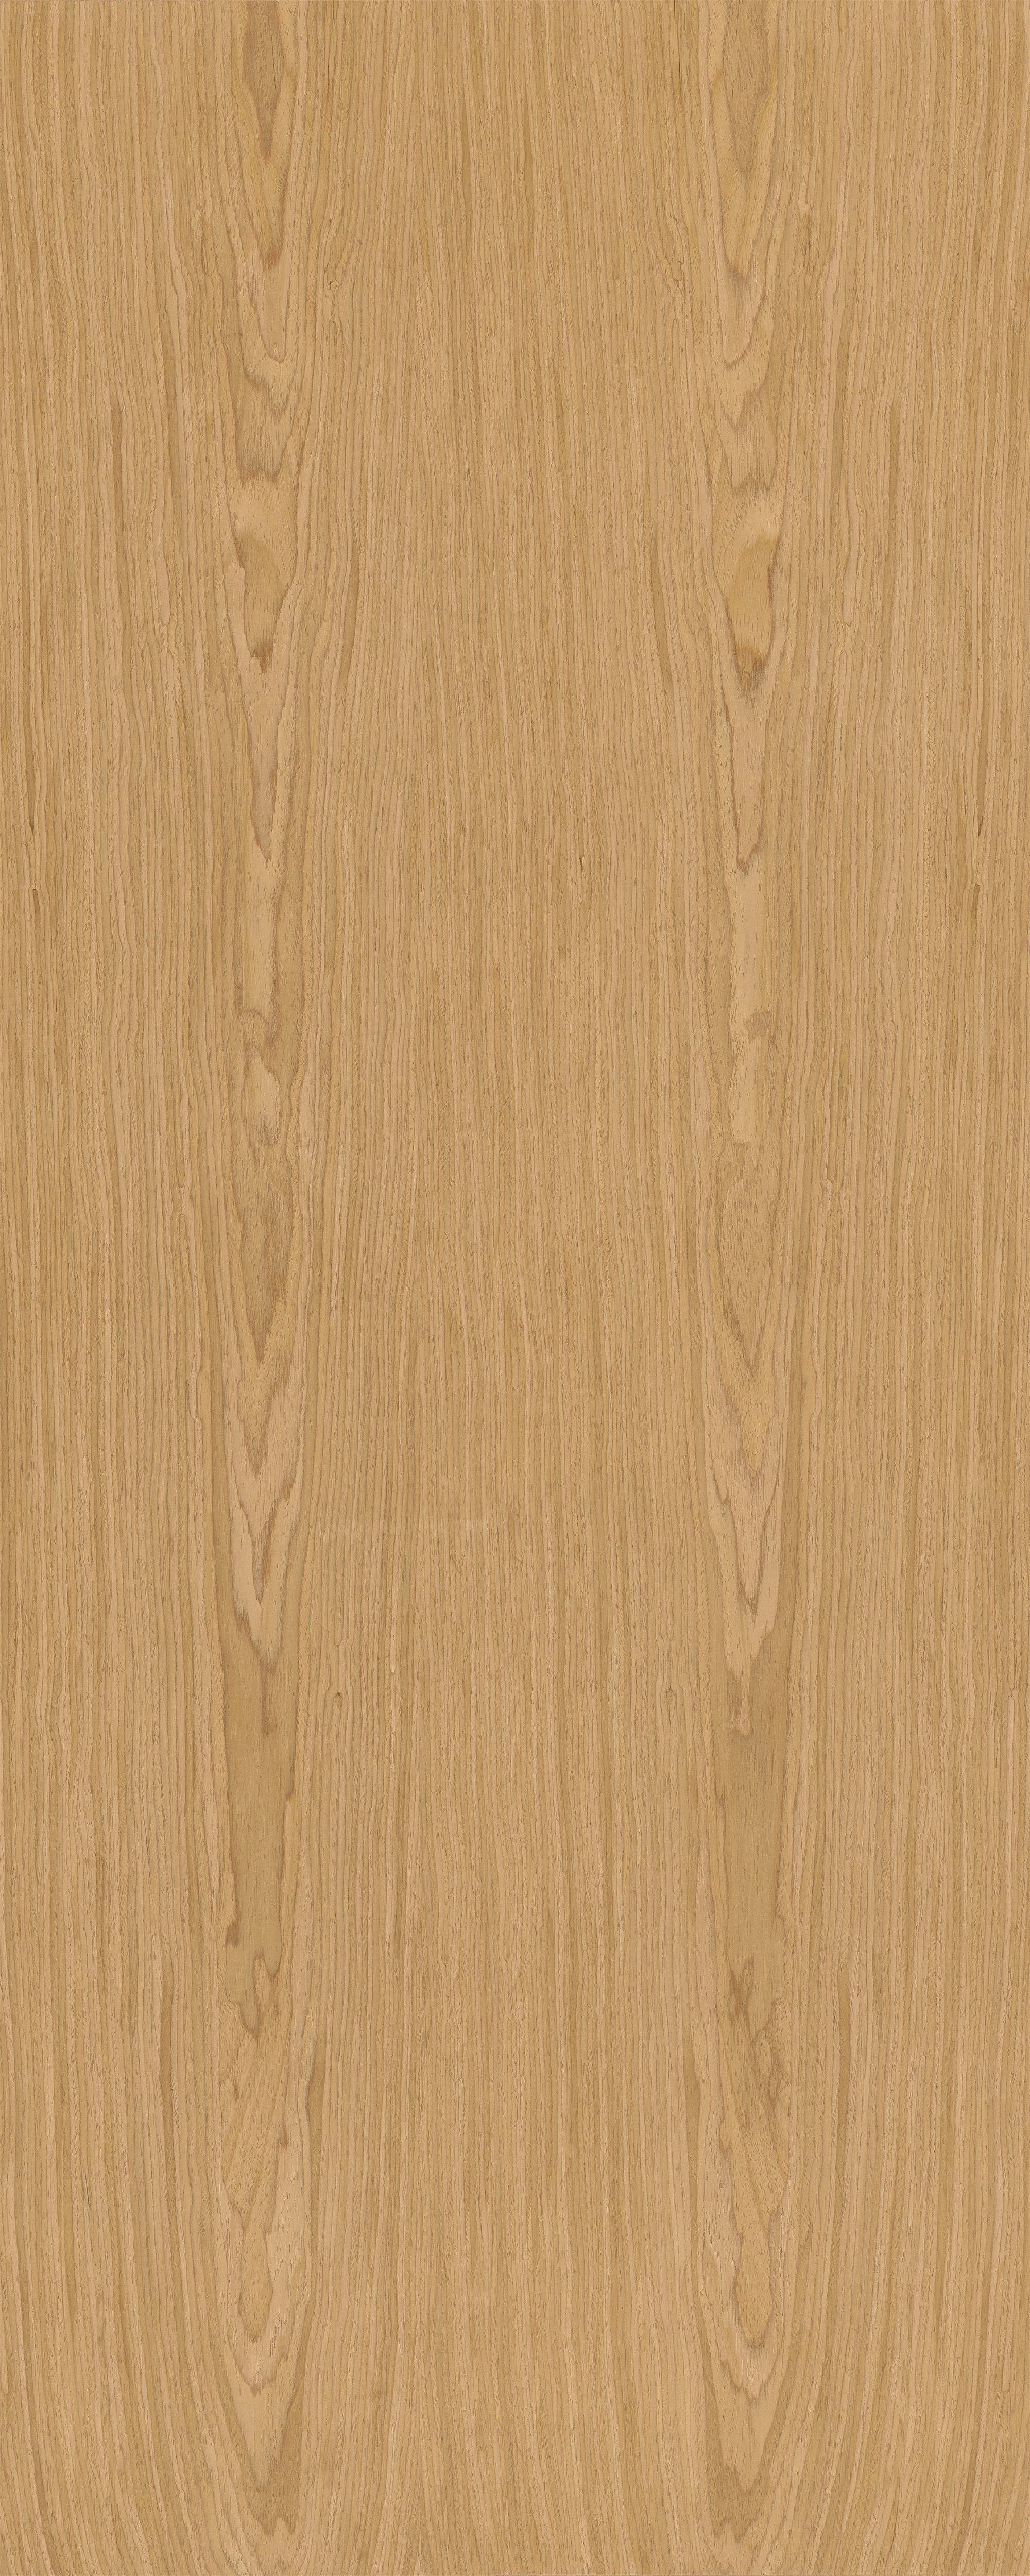 Интерьерная панель Oak 3000*1200*4 NT-19.1.1 Natural глянцевый